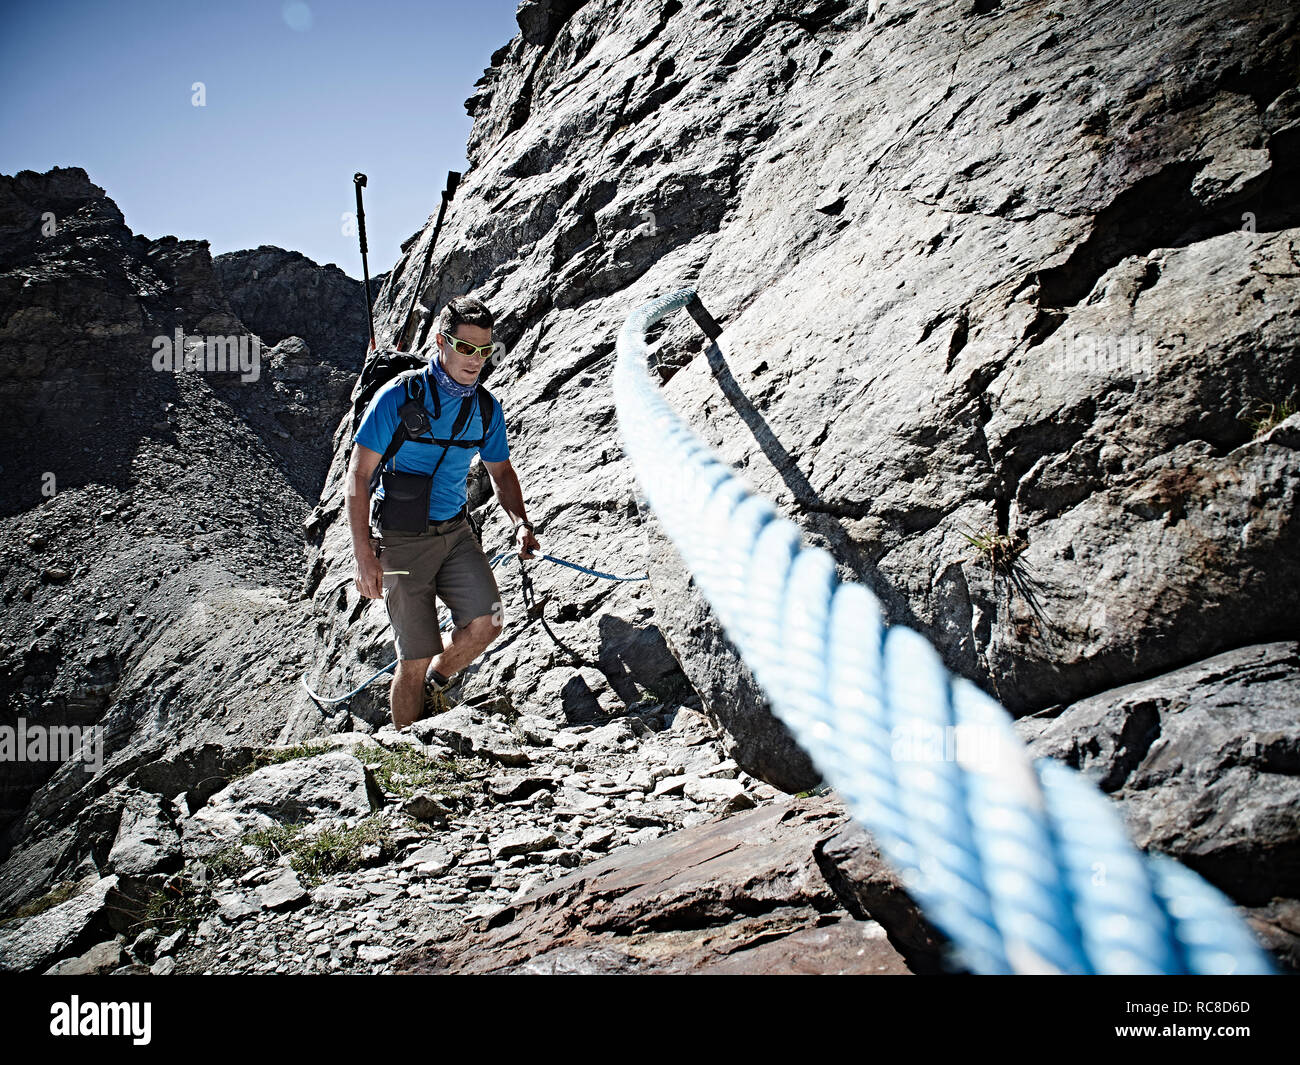 Excursionista con cuerdas para ascender la roca, Mont Cervin, Cervino, Valais, Suiza Foto de stock